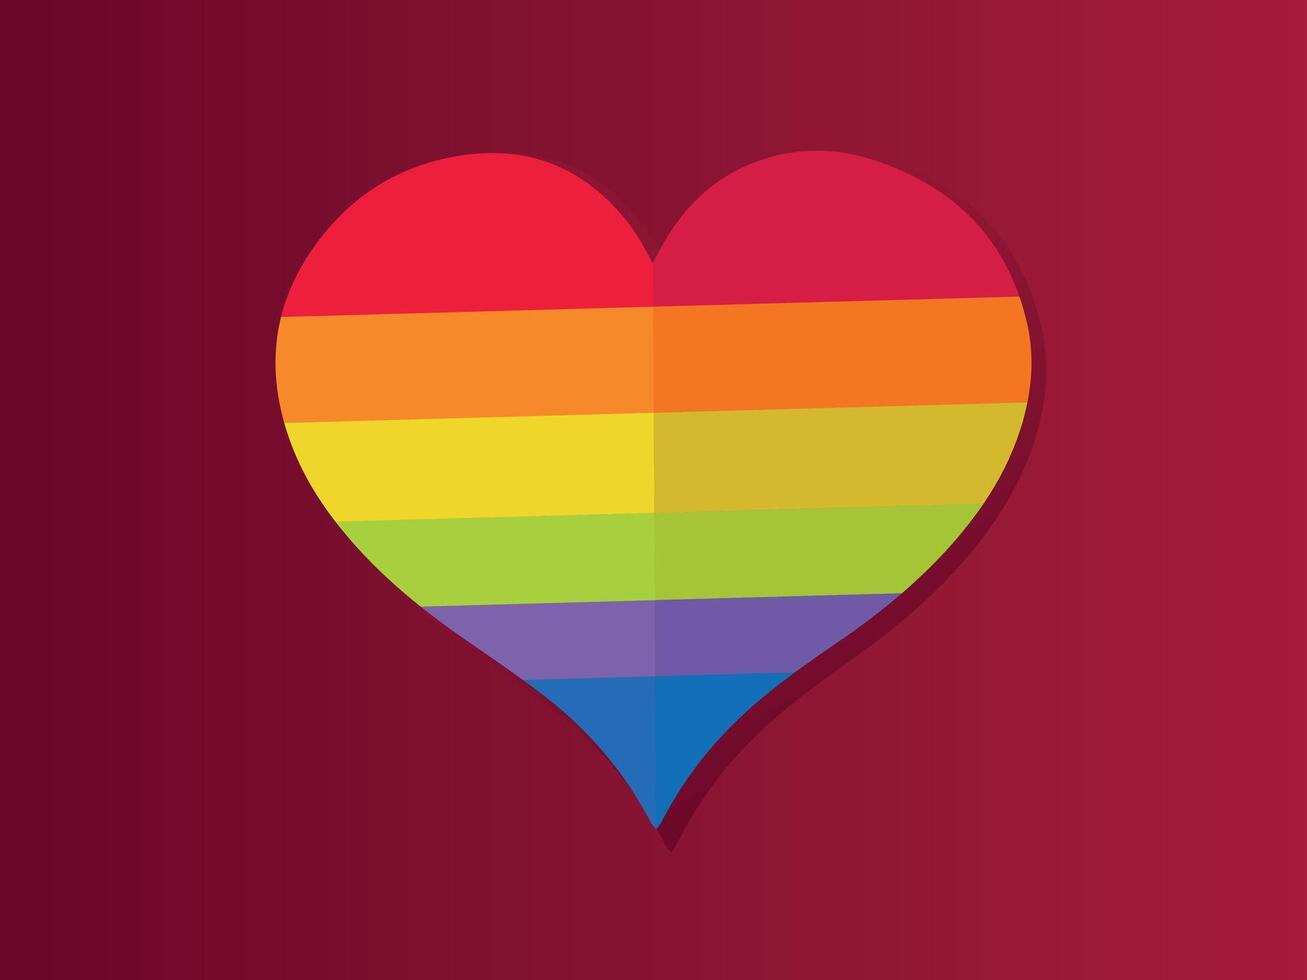 liefde regenboog hart geïsoleerd icoon. homoseksualiteit, gelijkwaardigheid, diversiteit, trots, vrijheid concept vector